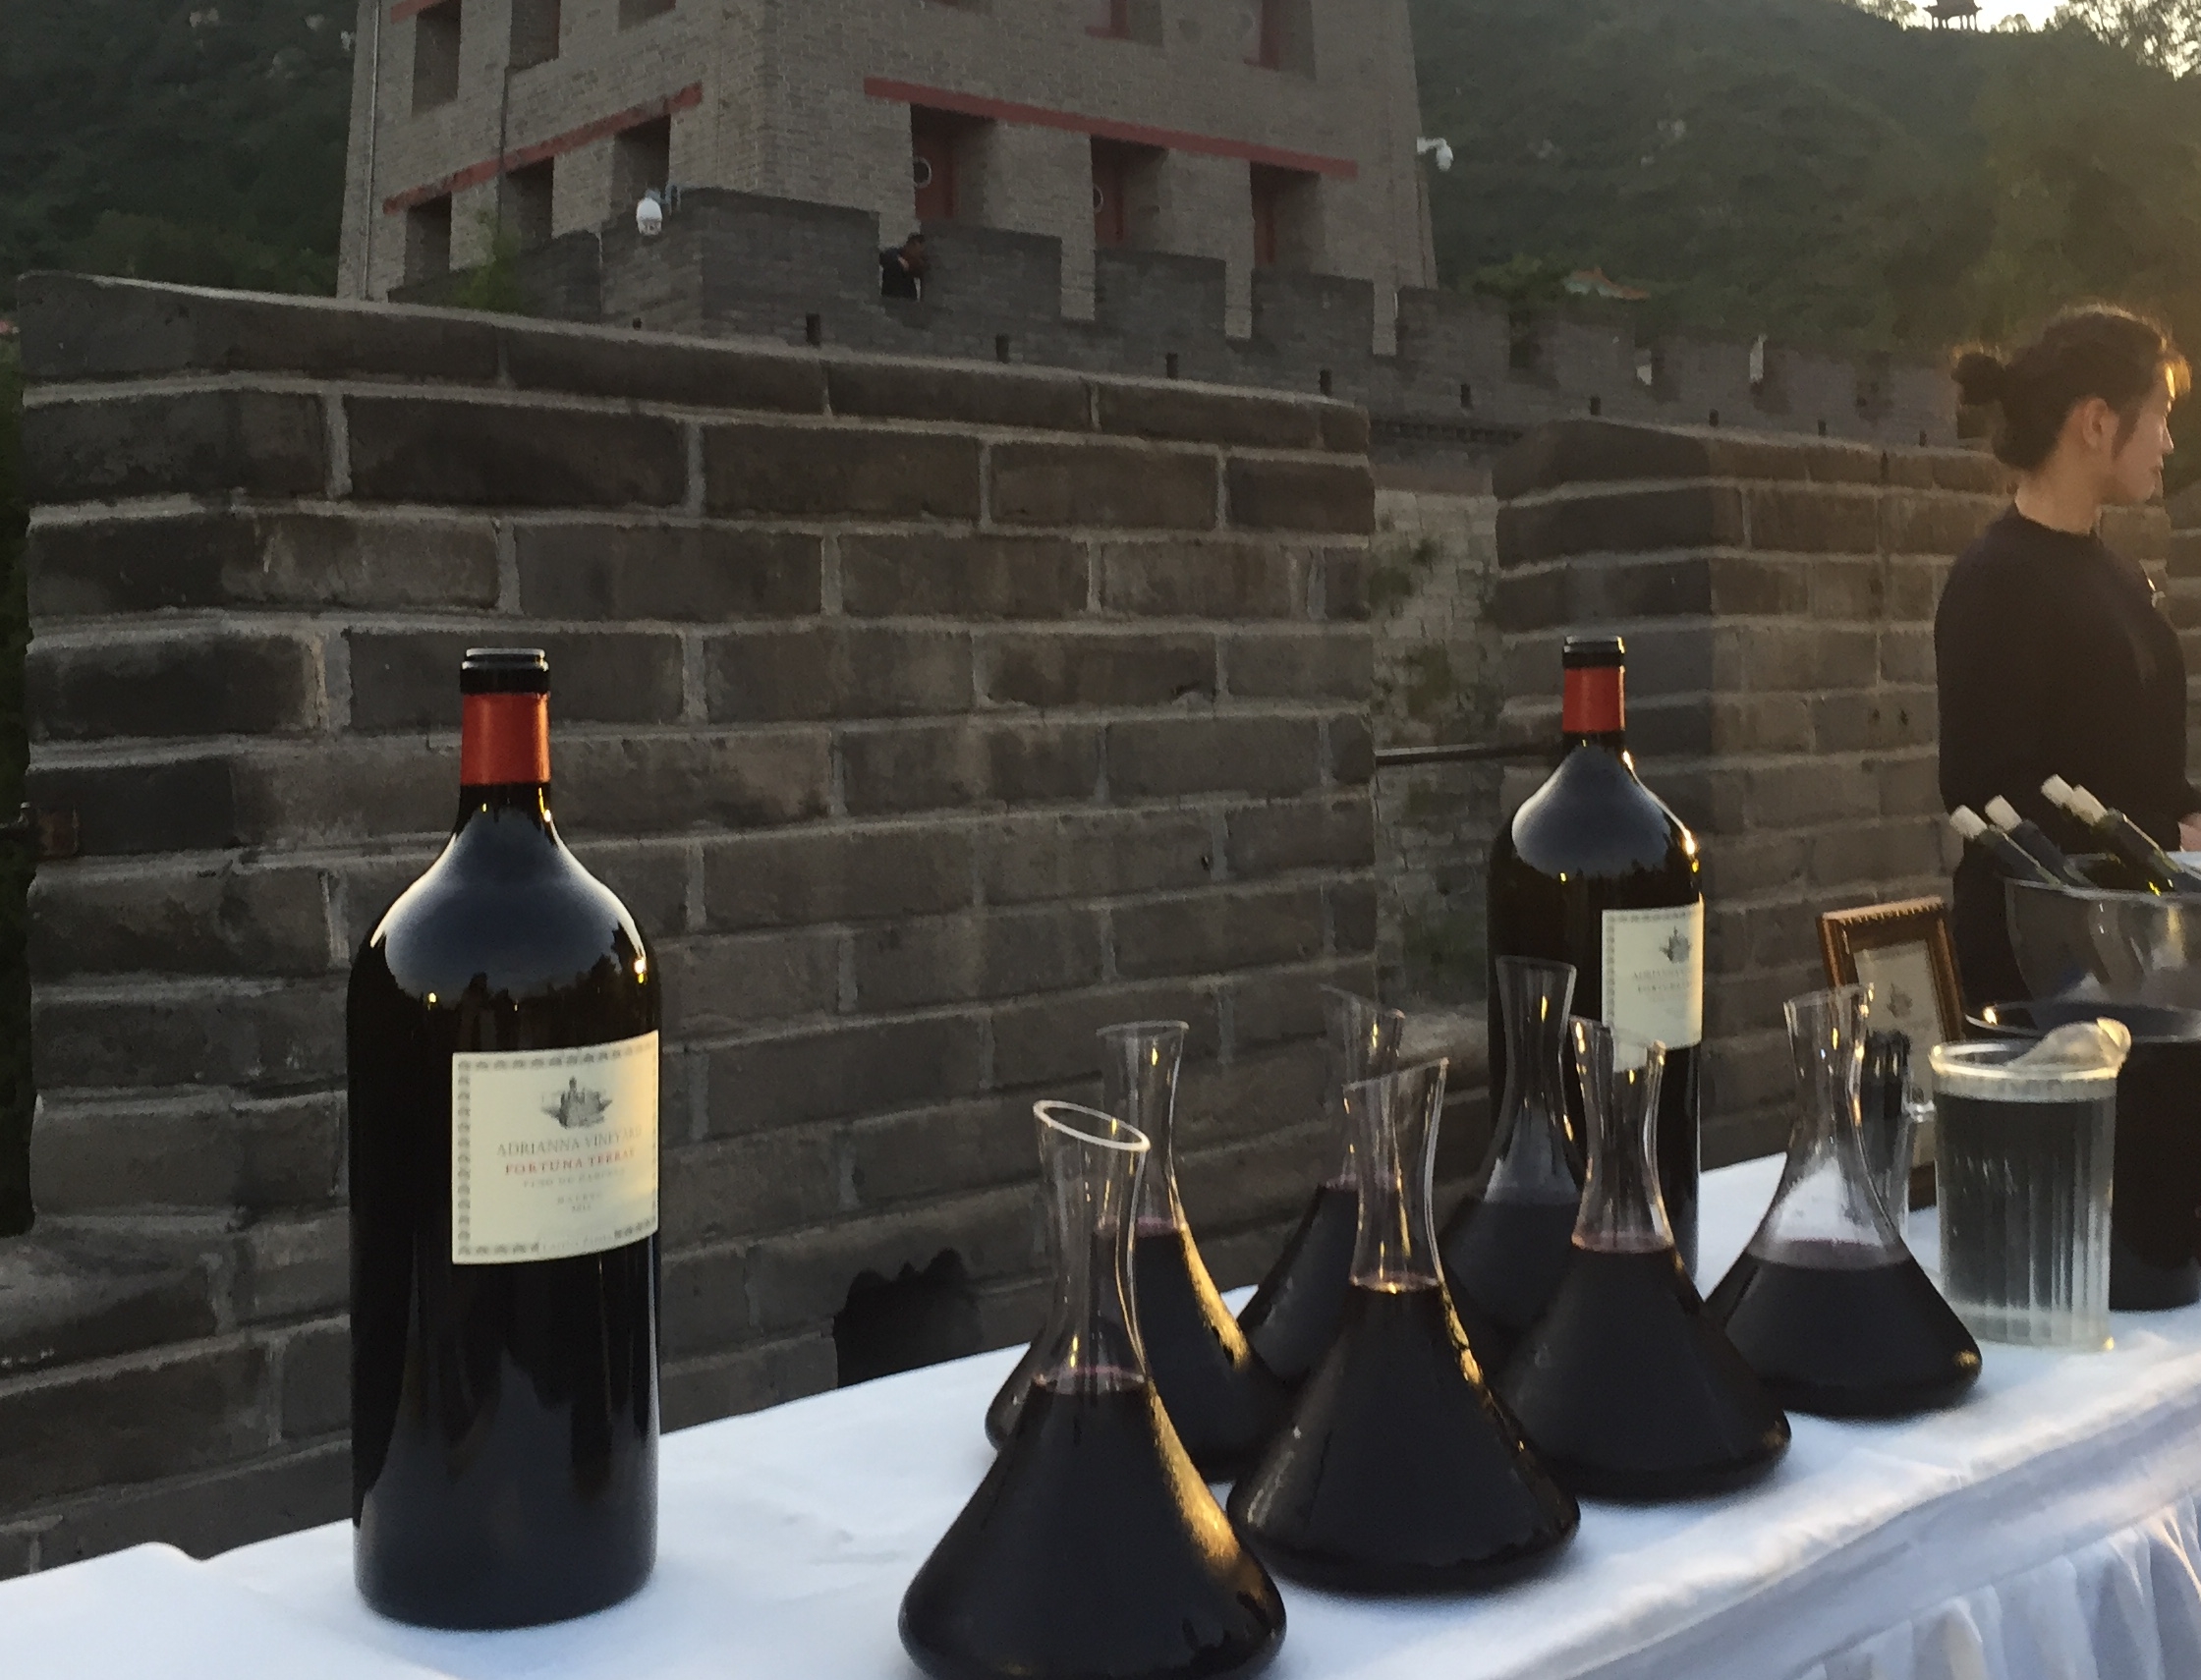 Mesa de una degustación de vinos en China. Jack Ma ofreció hace 5 años vender vinos argentinos a través de Ali Baba, pero luego cayó en desgracia